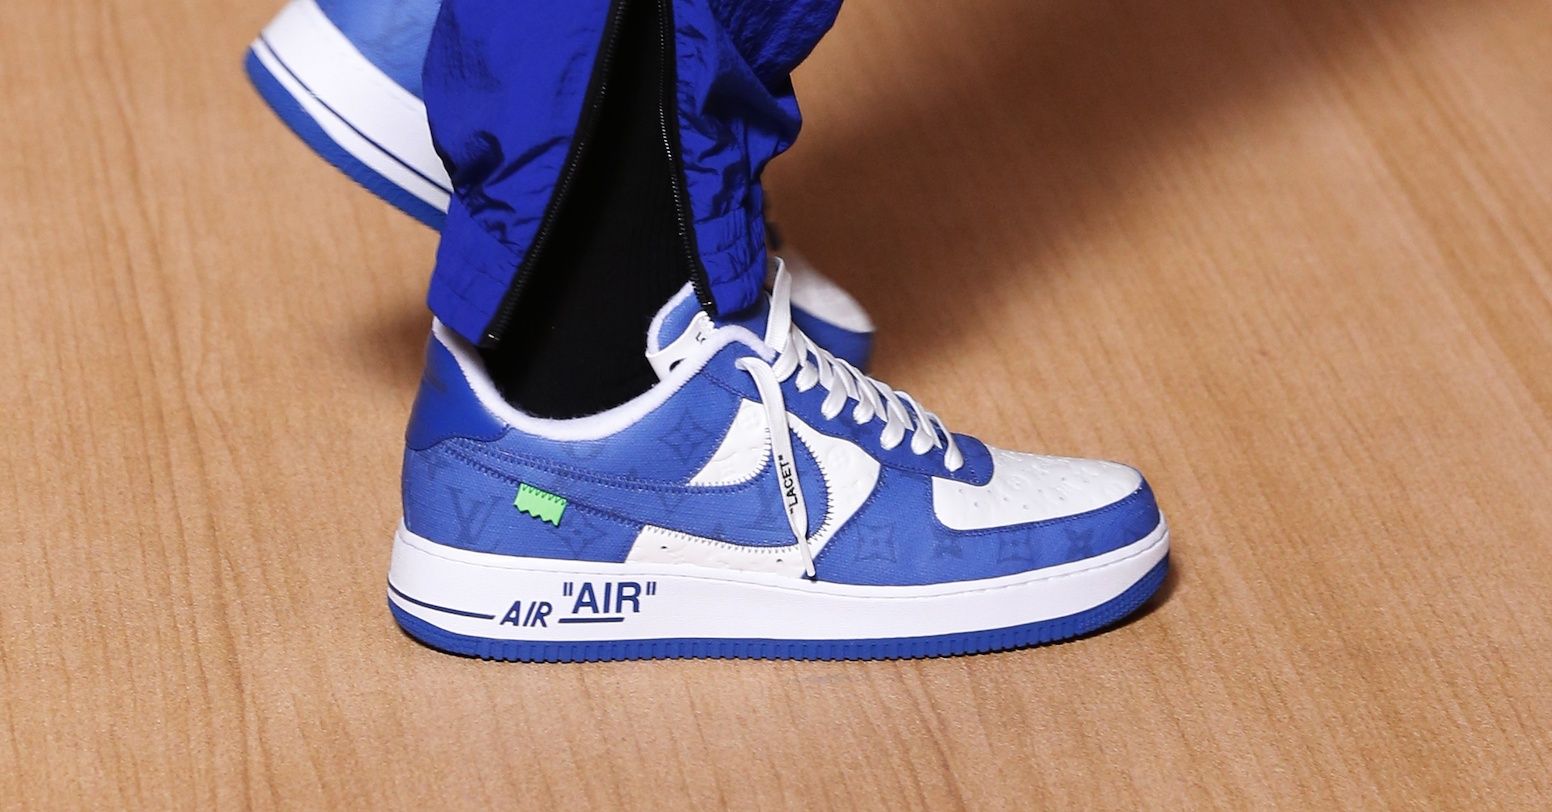 Louis Vuitton x Nike Air Force 1 by Virgil Abloh Sneakers Details   Footwear News